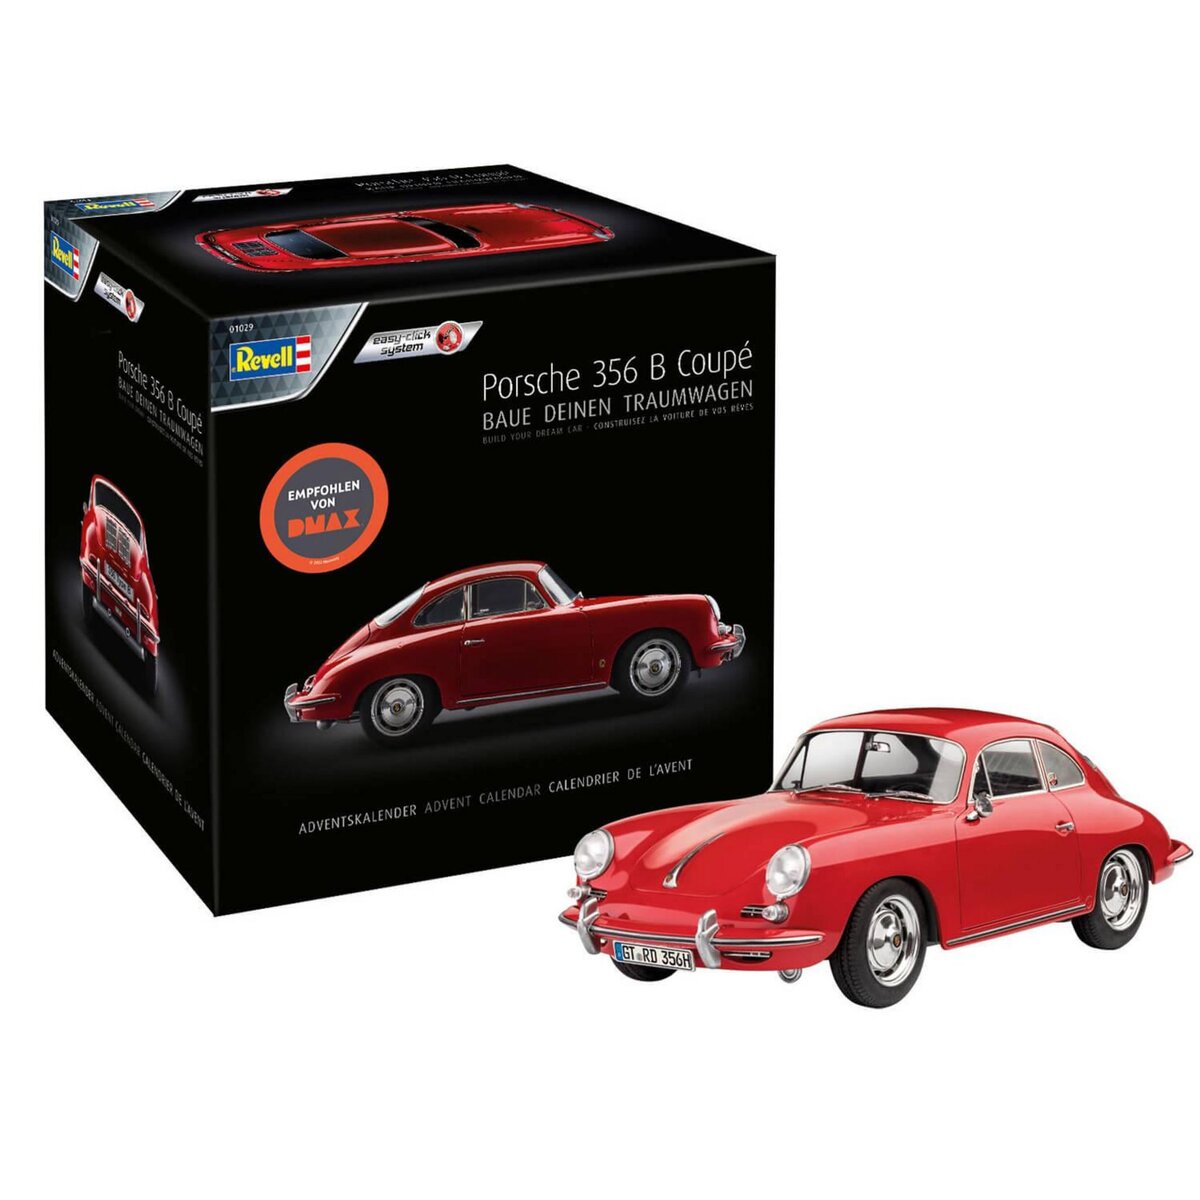 Calendrier de l'avent : Maquette voiture Porsche 356 B Coupé - Easy Click  pas cher 